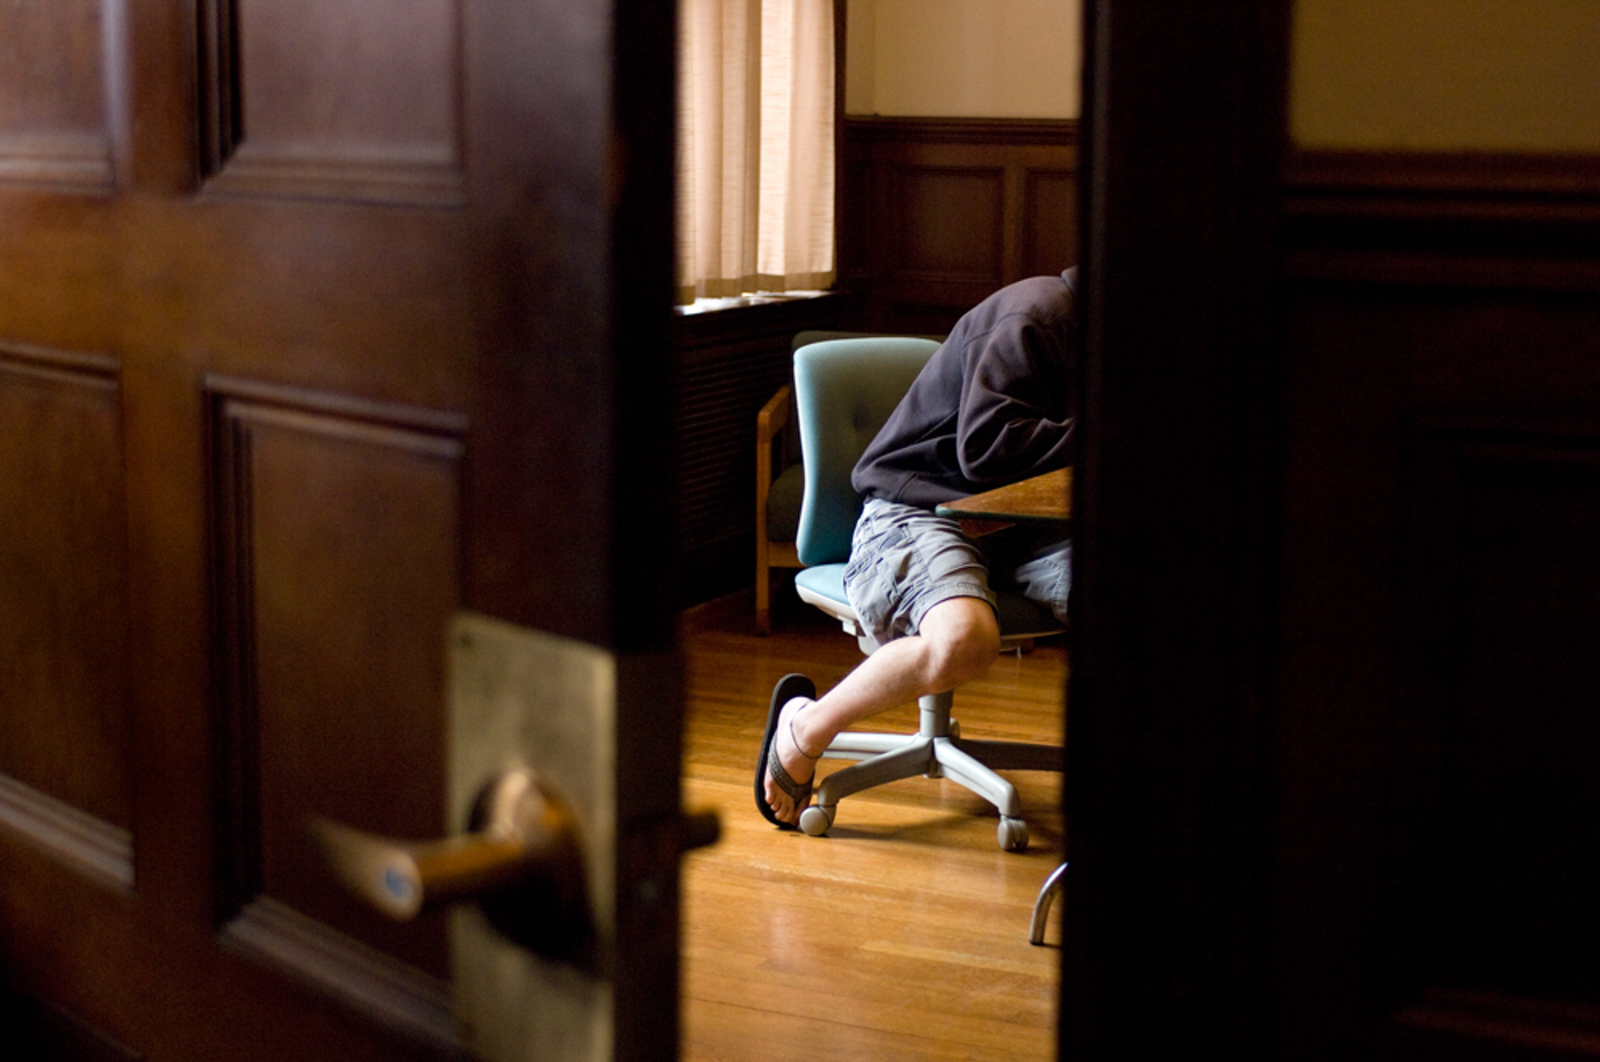 Student working in room seen through an open door wearing flip flops